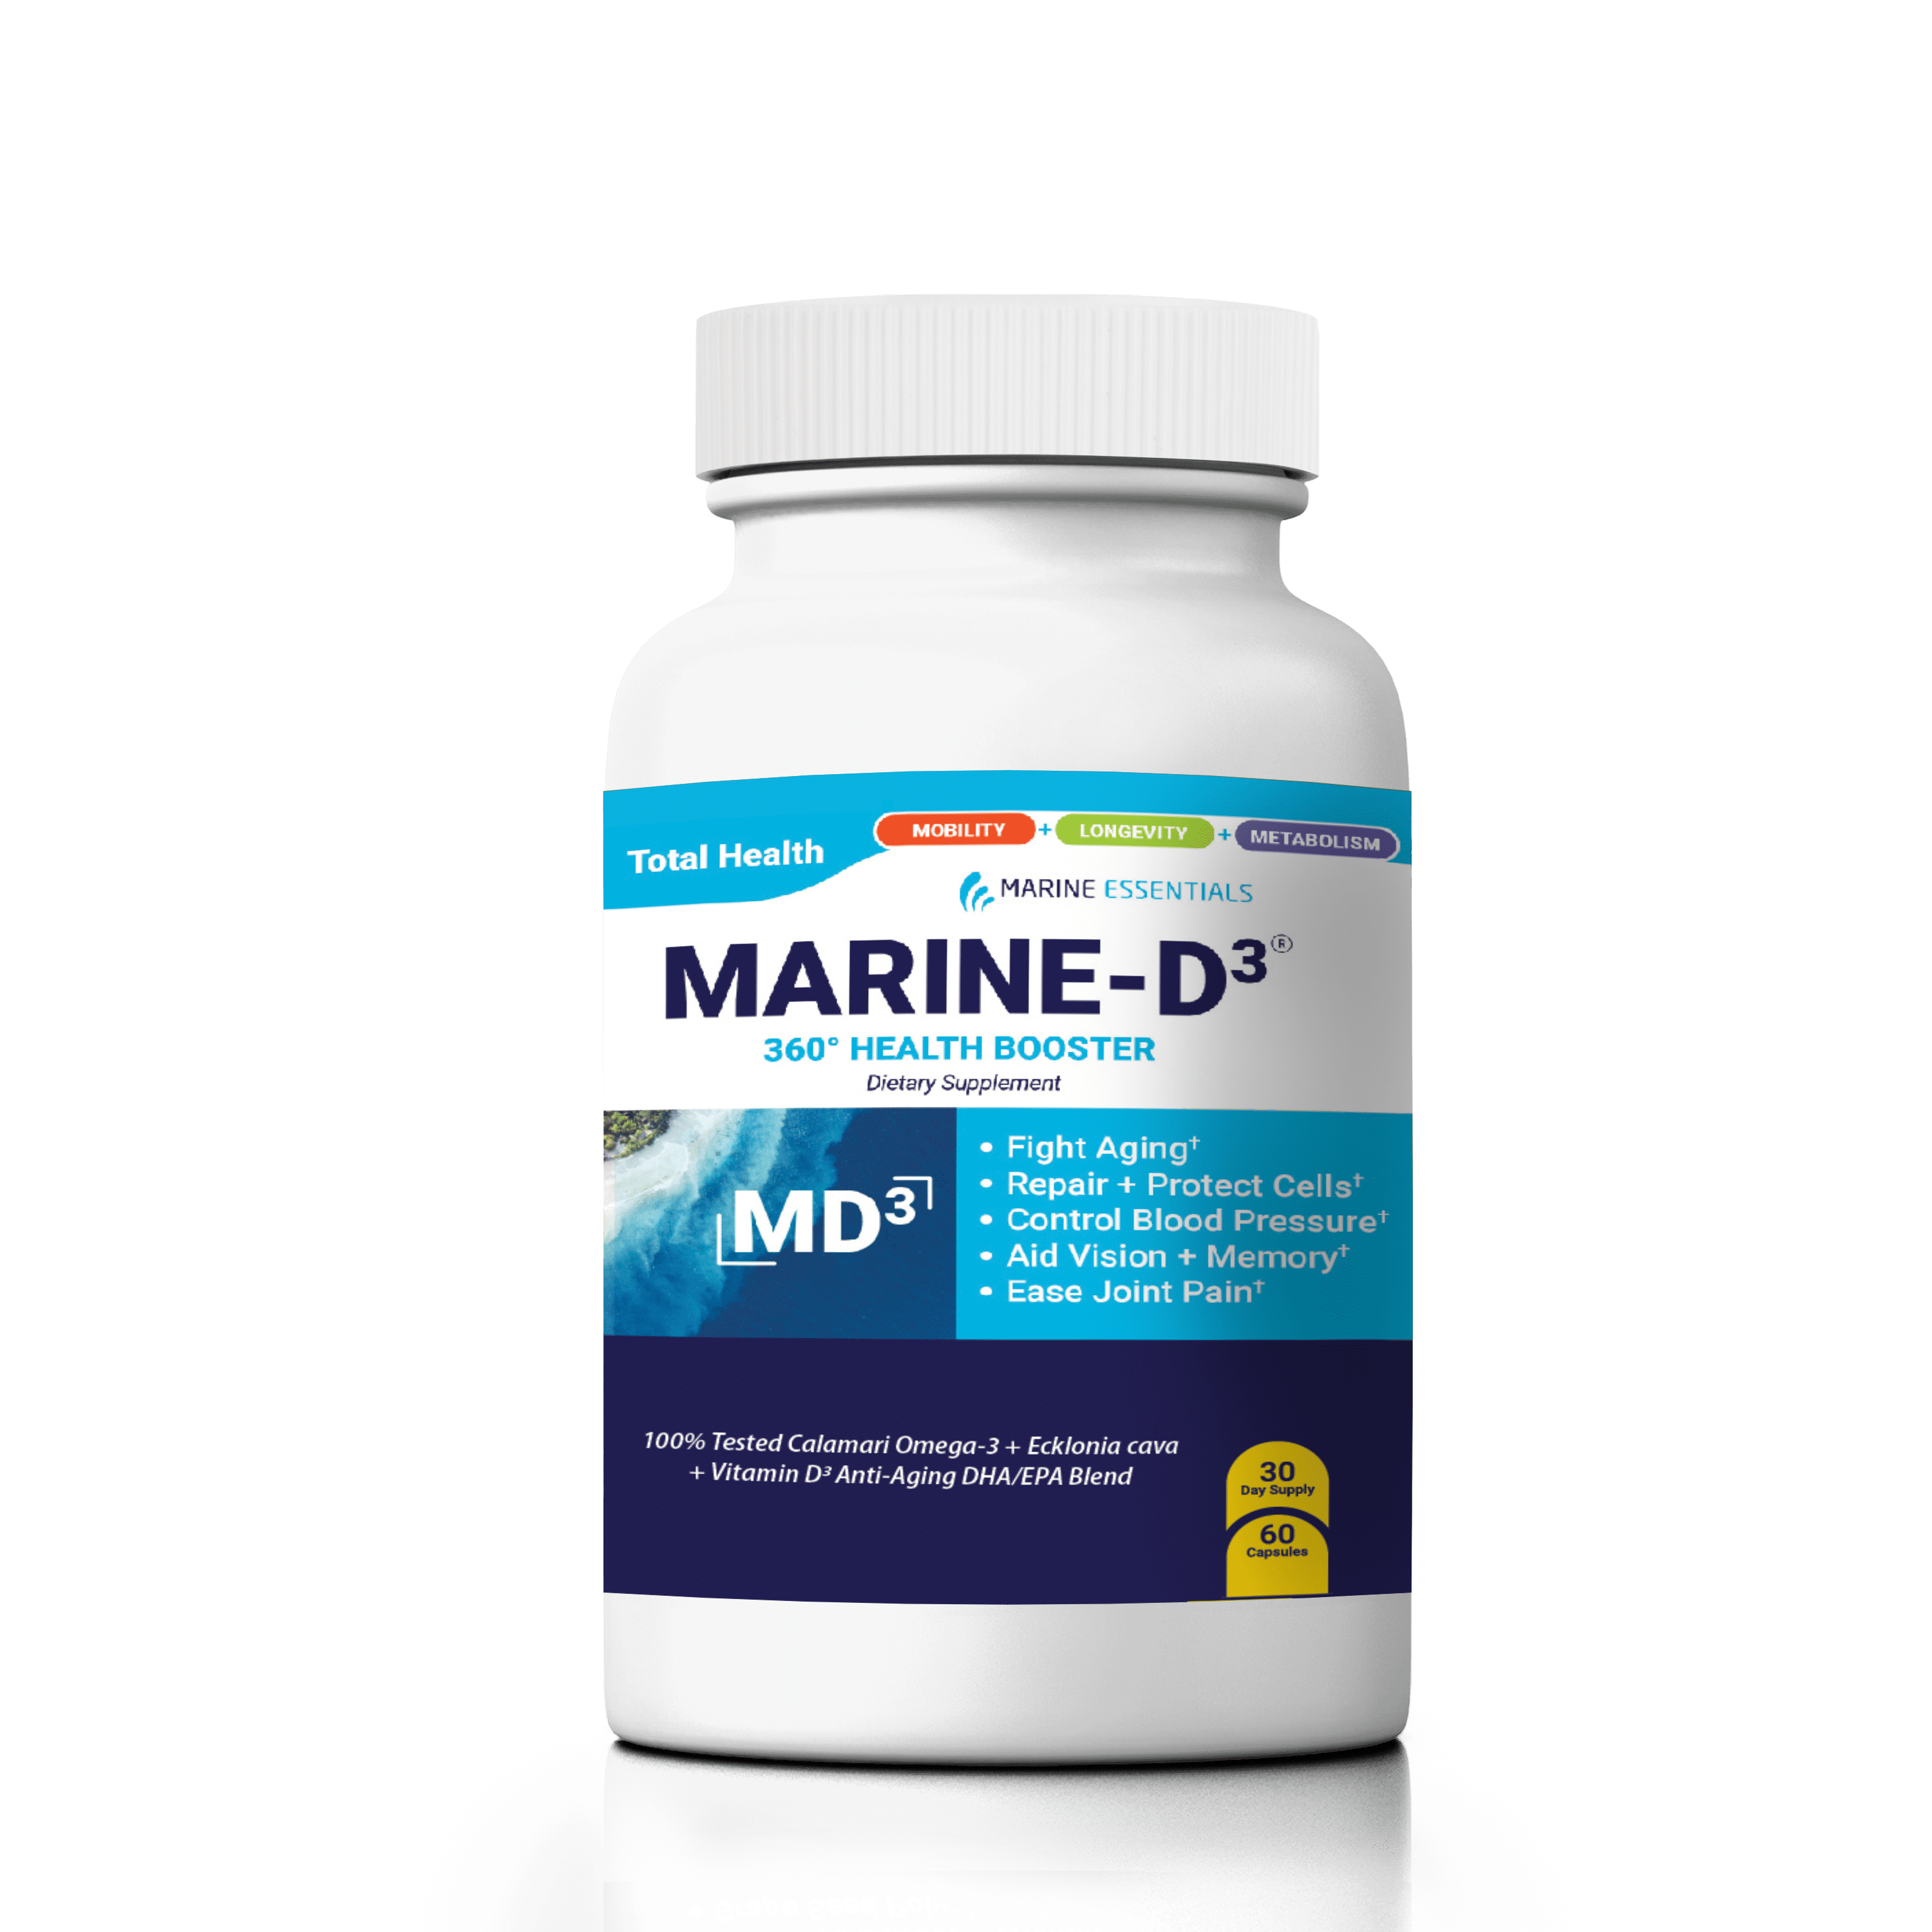 Marine Essentials - Marine-D3 Dietary Supplement